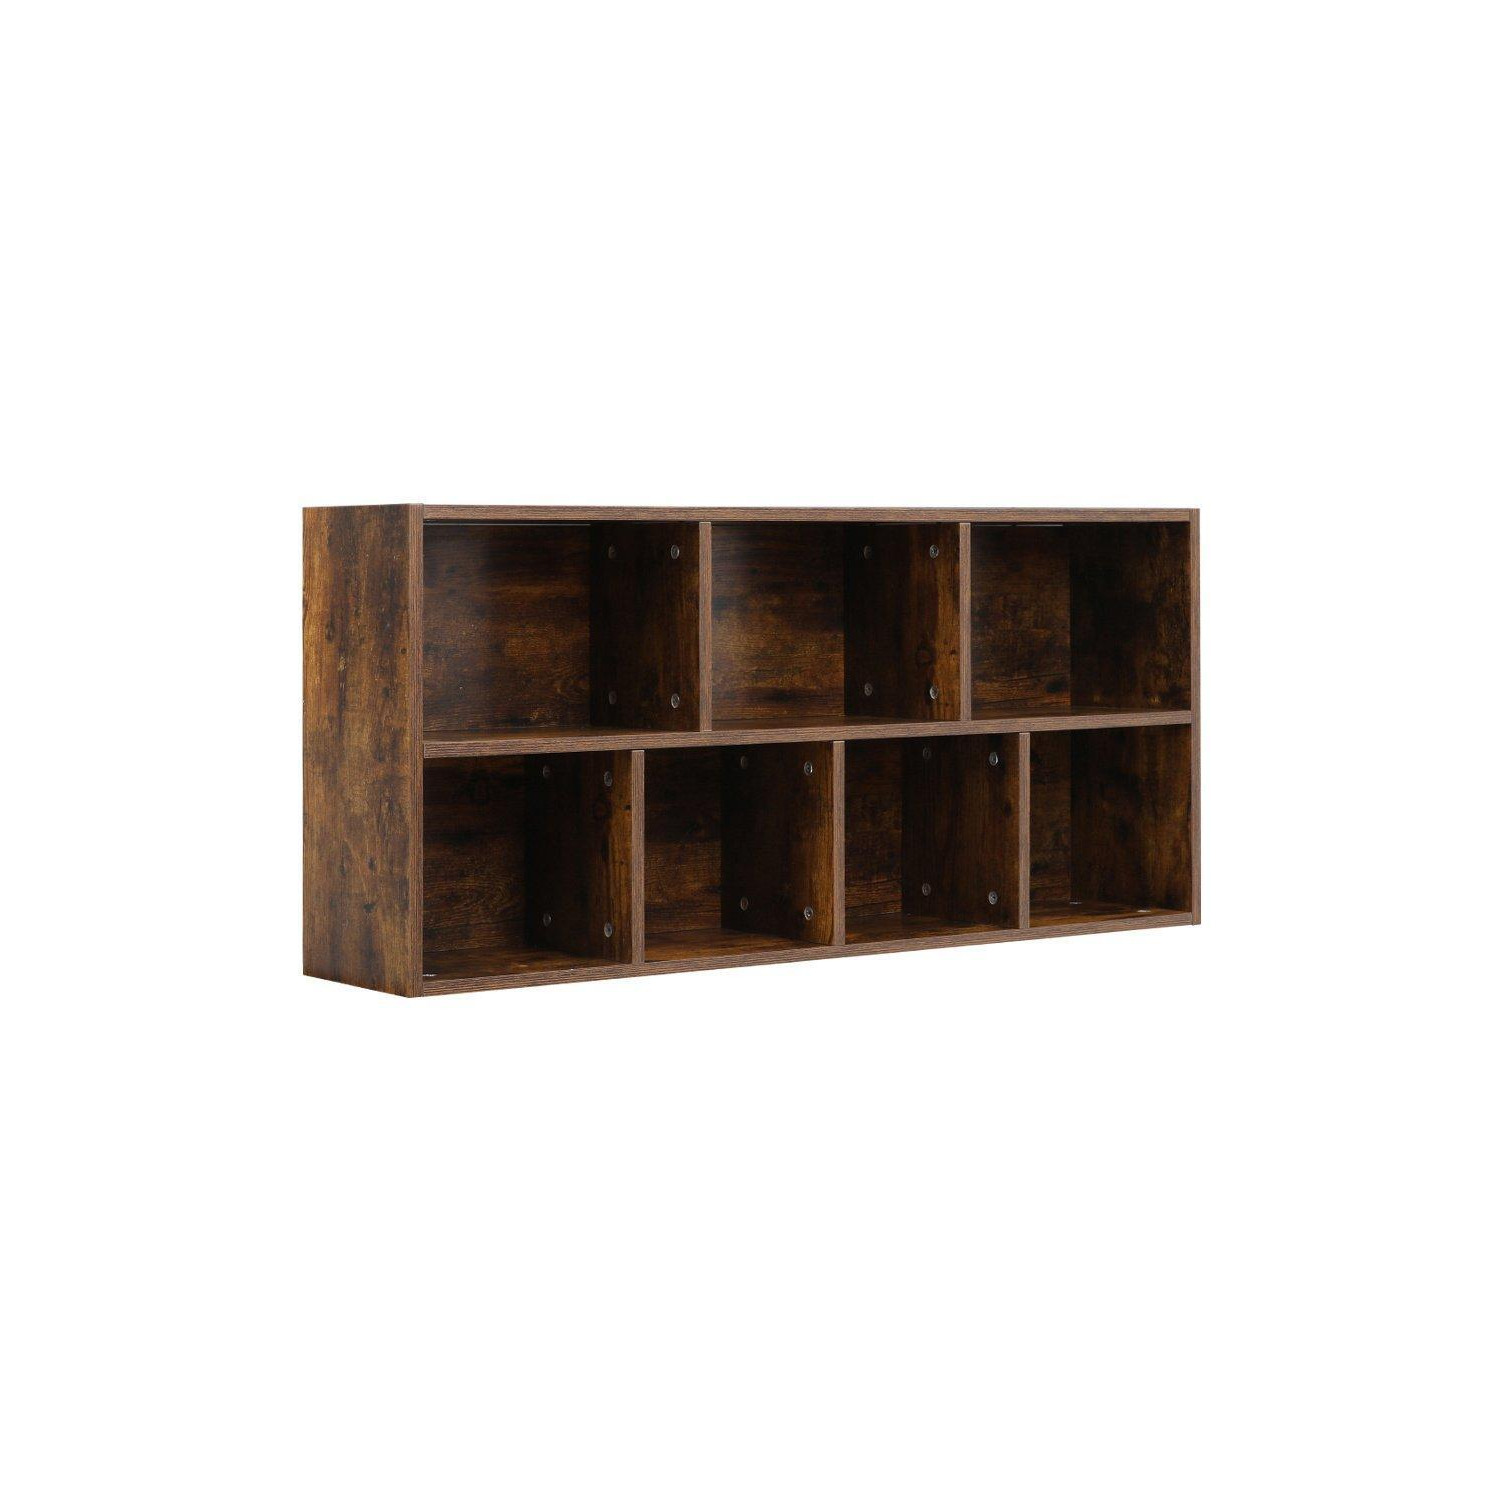 Cube Wooden Bookcase Organizer Storage Shelving Unit - image 1